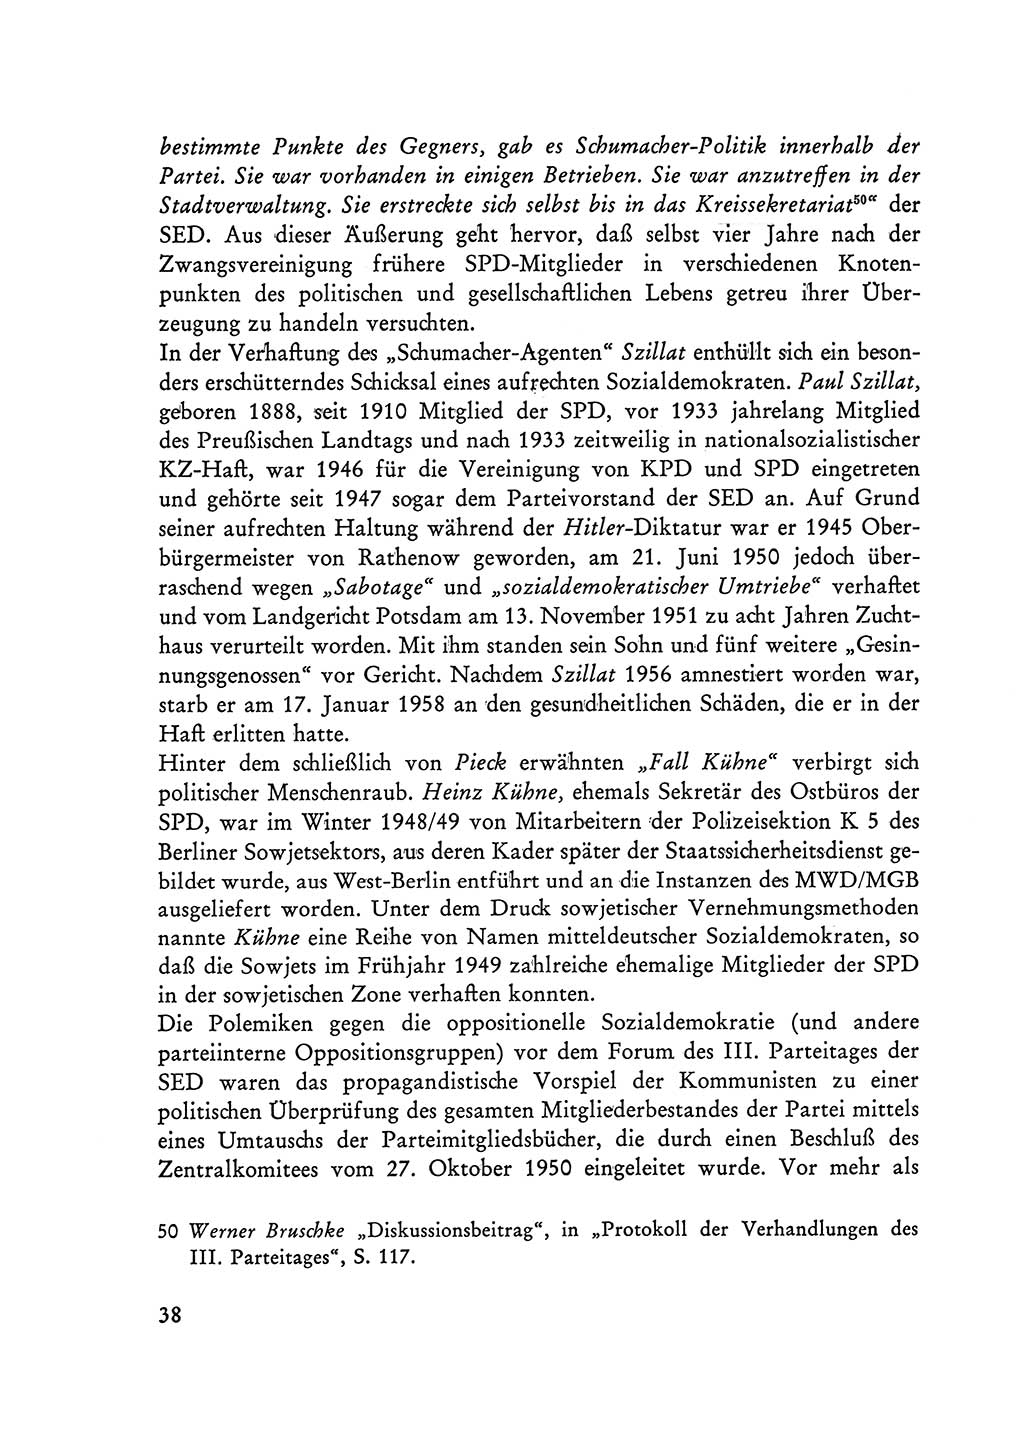 Selbstbehauptung und Widerstand in der Sowjetischen Besatzungszone (SBZ) Deutschlands [Deutsche Demokratische Republik (DDR)] 1964, Seite 38 (Selbstbeh. Wdst. SBZ Dtl. DDR 1964, S. 38)